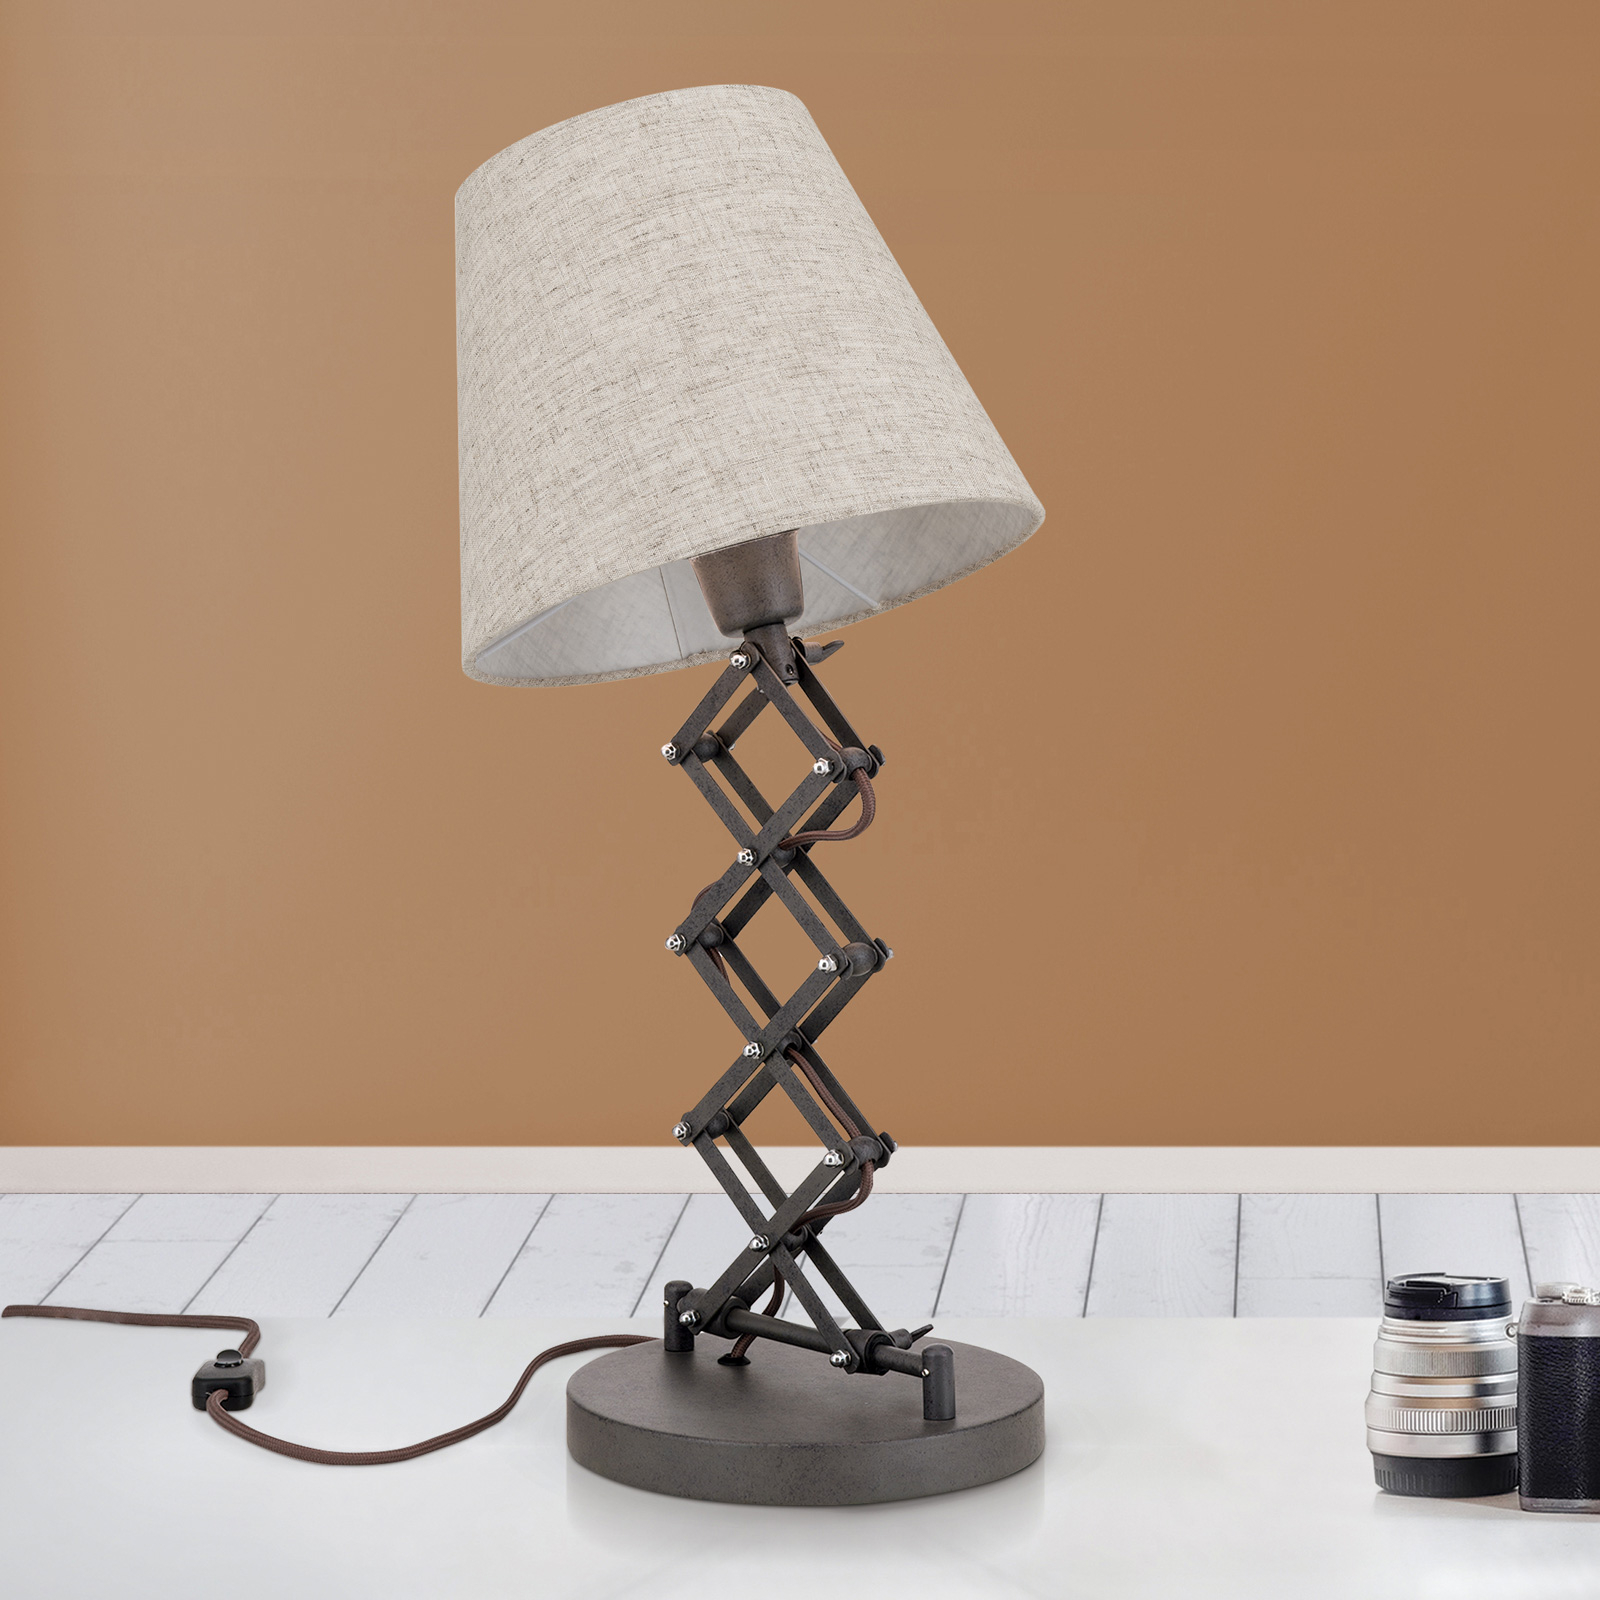 Factory bordlampe i industridesign